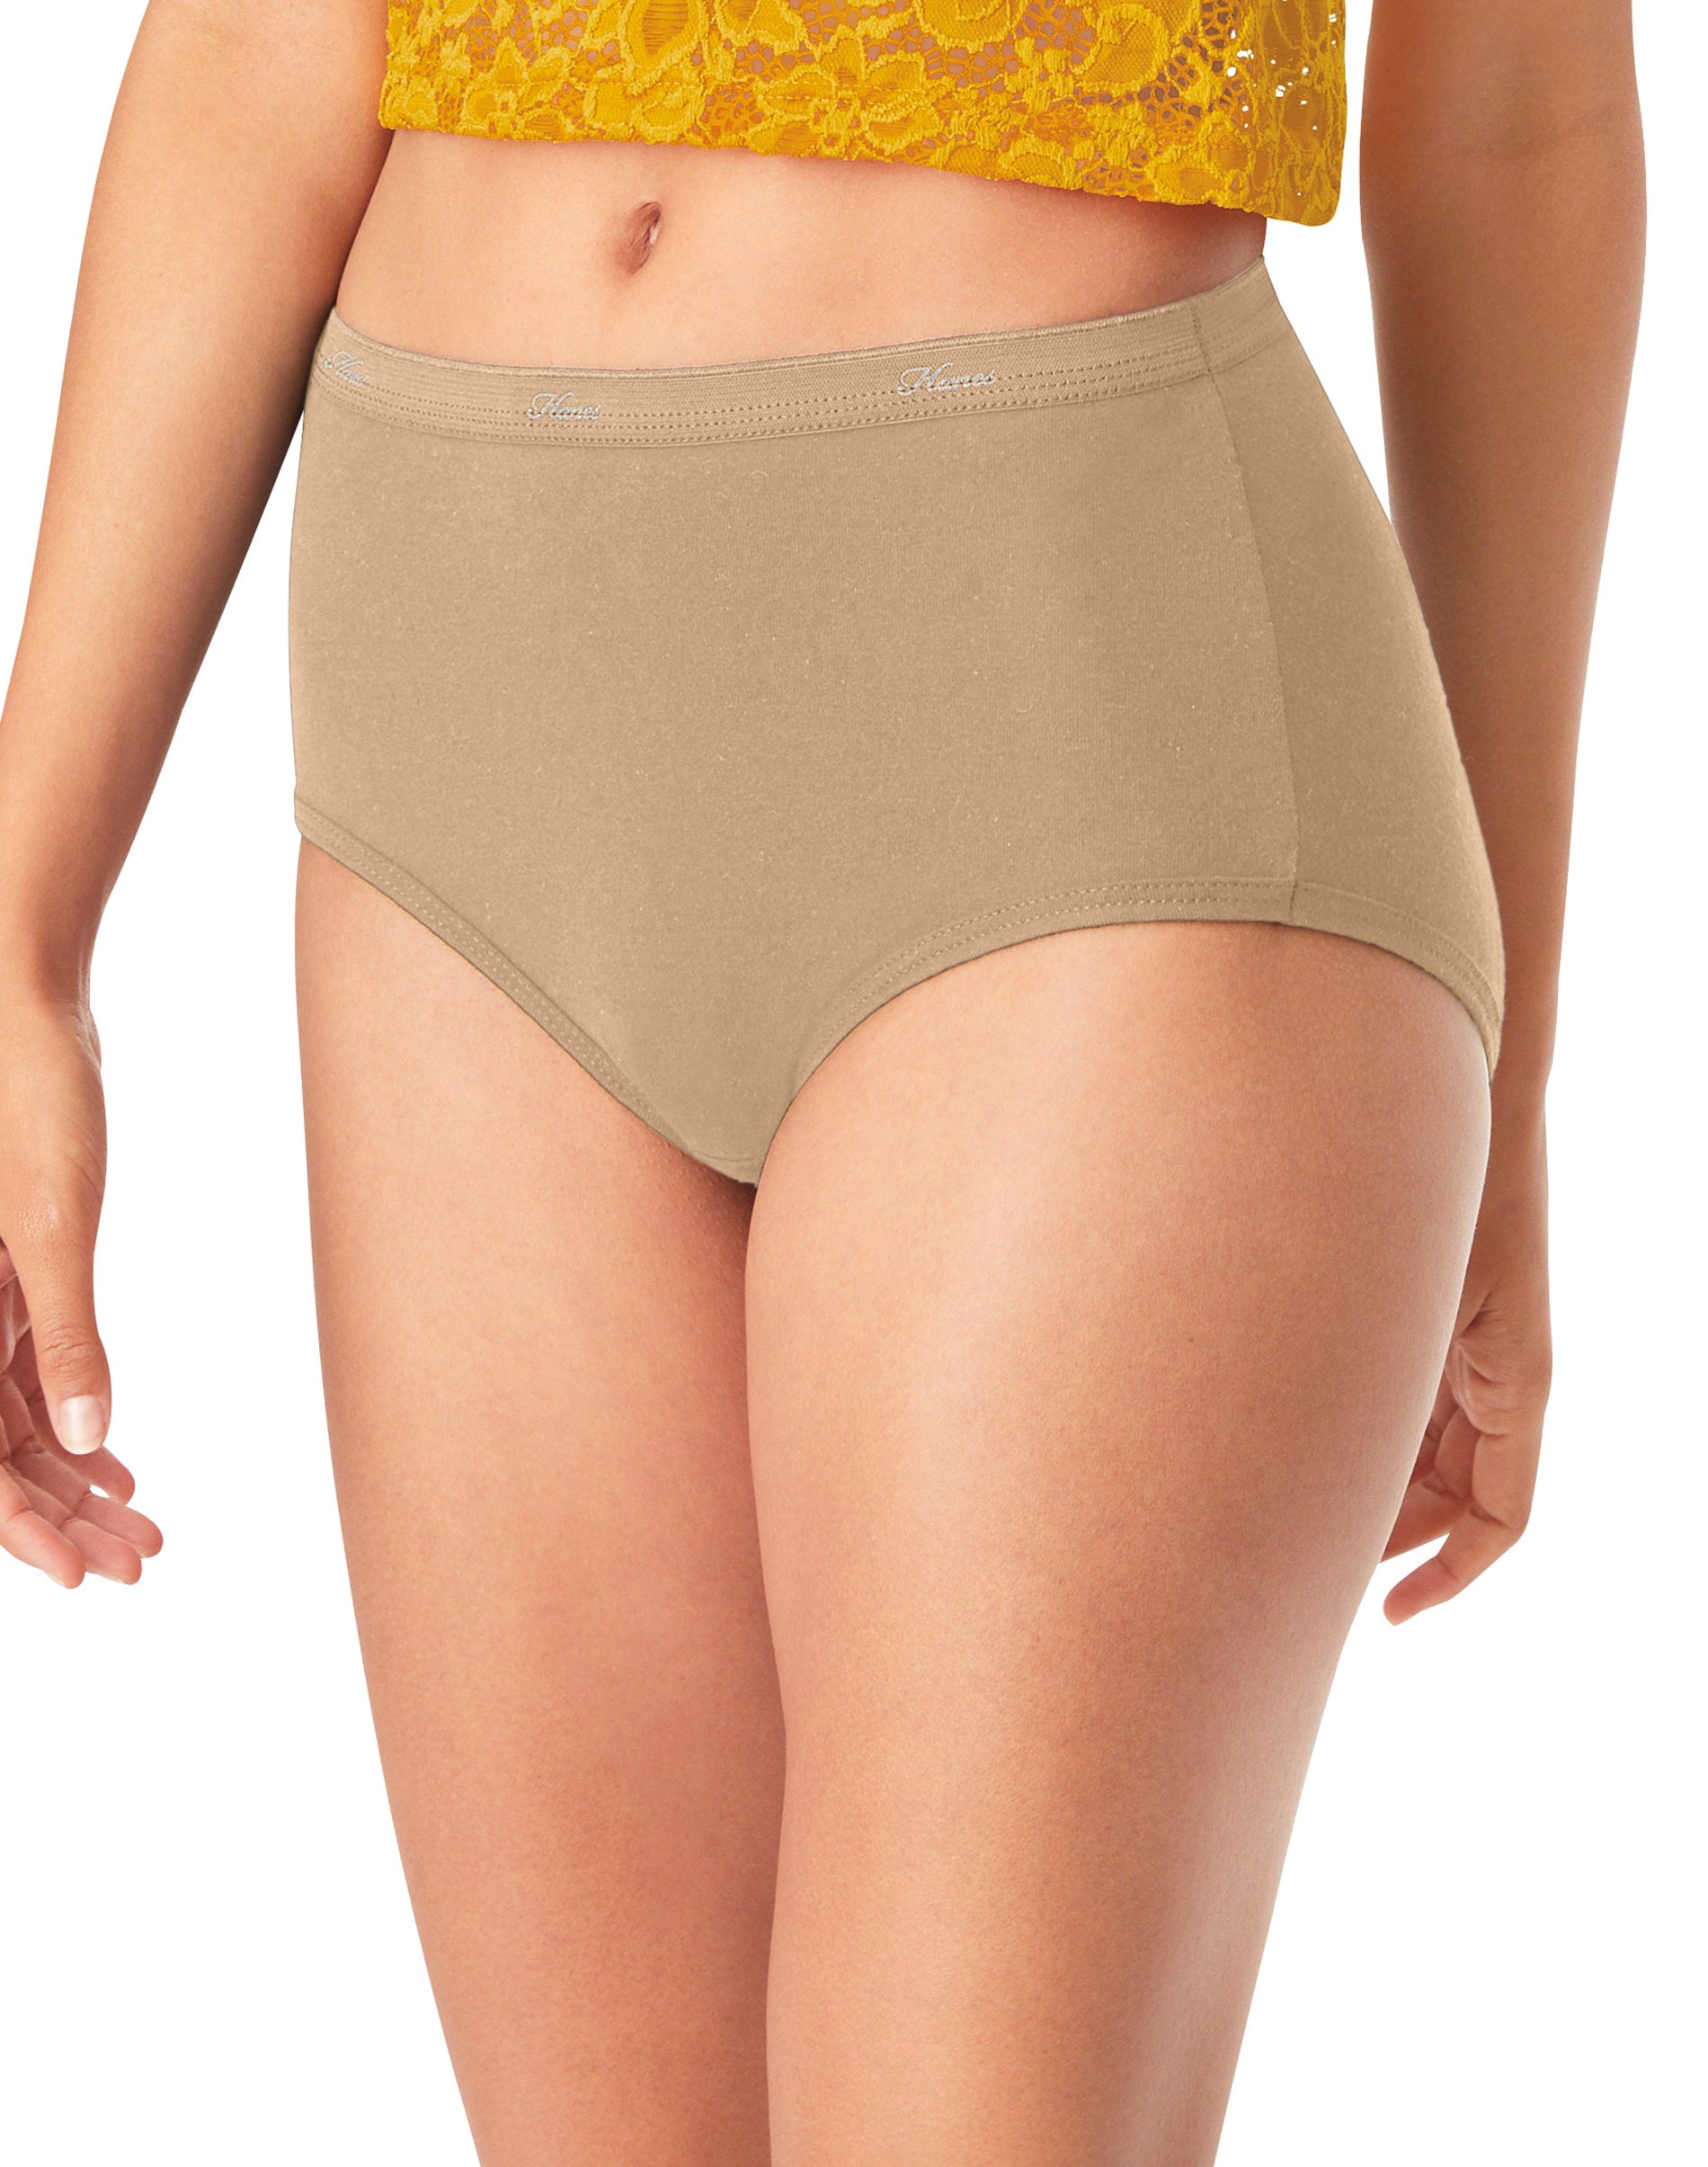 Hanes Women's Cotton Brief Underwear, Moisture-Wicking, 6-Pack Assorted 2 7  